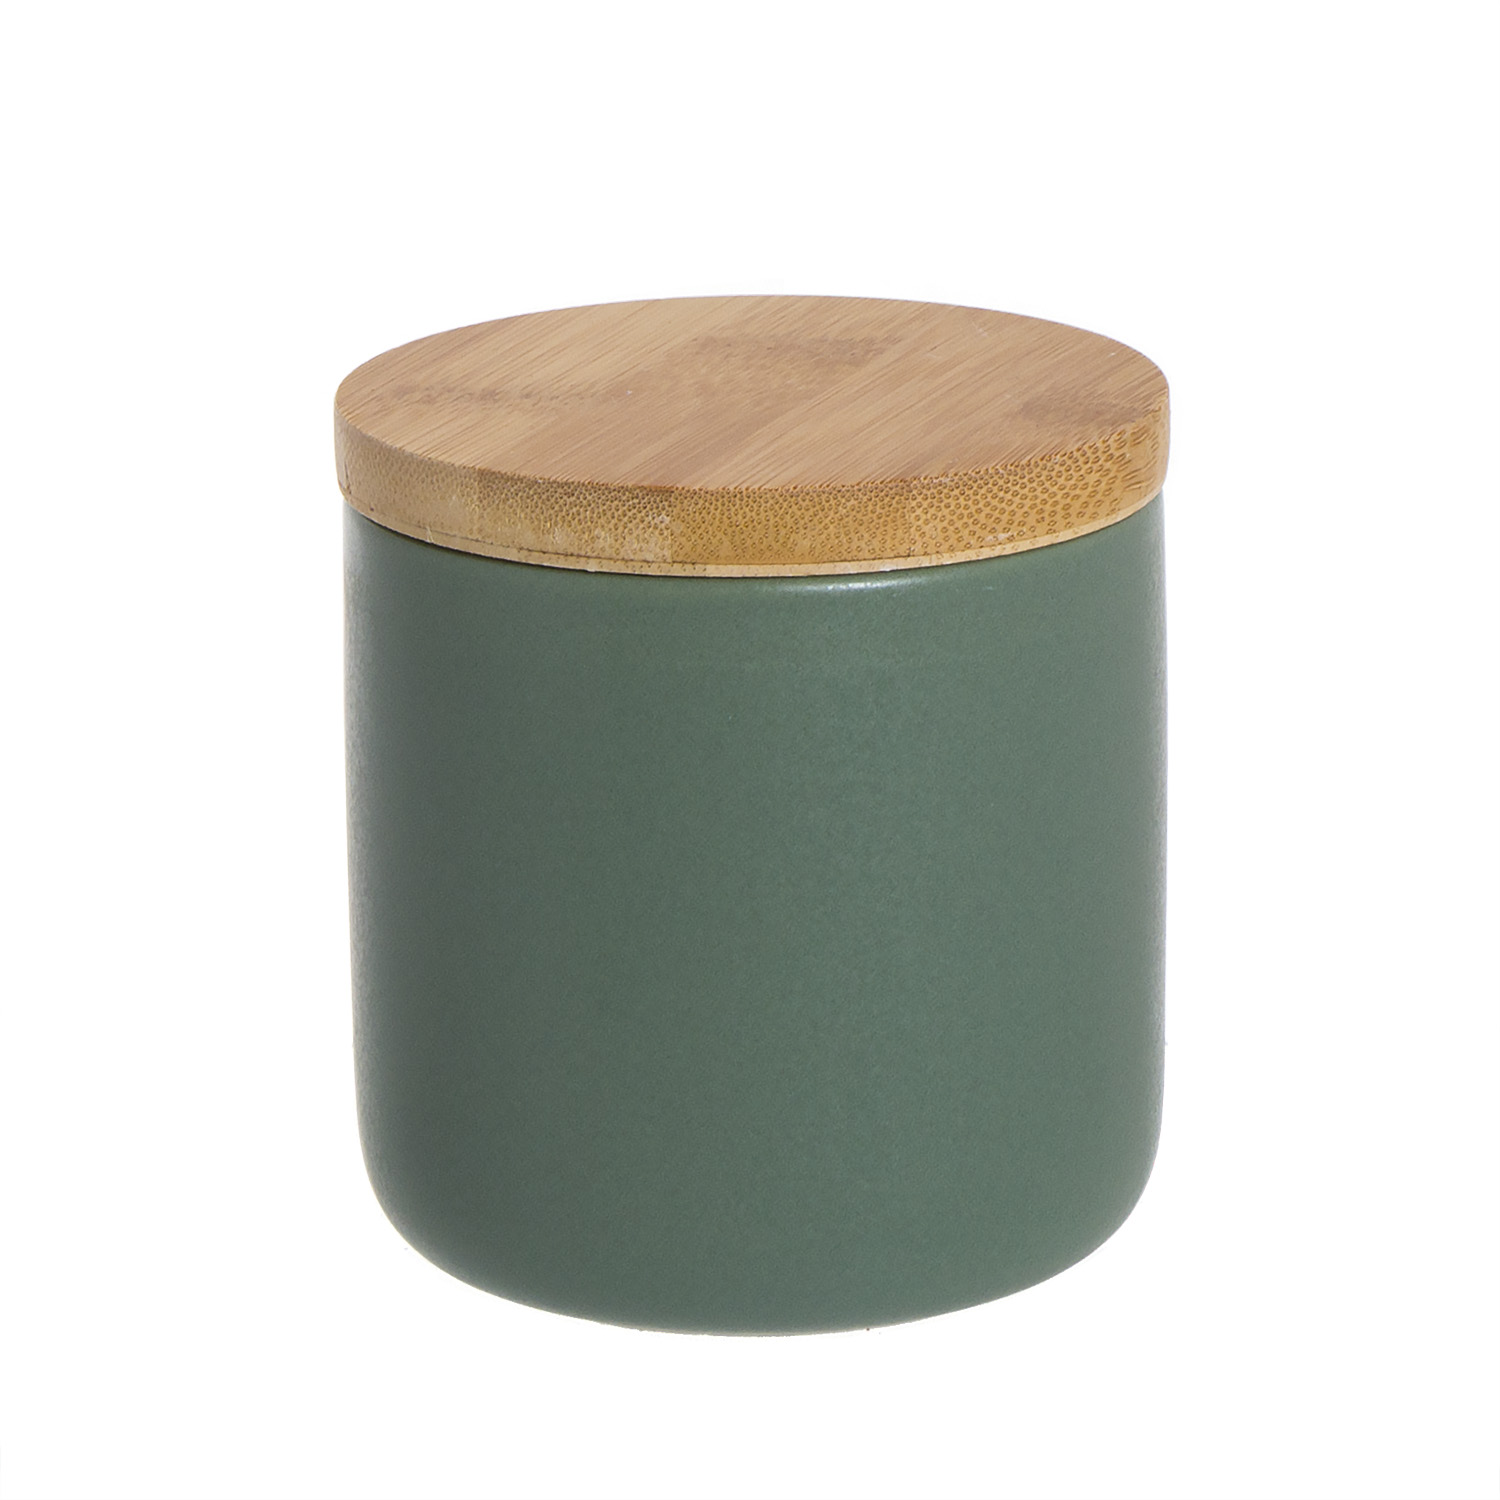 Стакан для ватных дисков Oscuro green, 8 см, 9 см, Дерево, Керамика, Dcasa, Испания